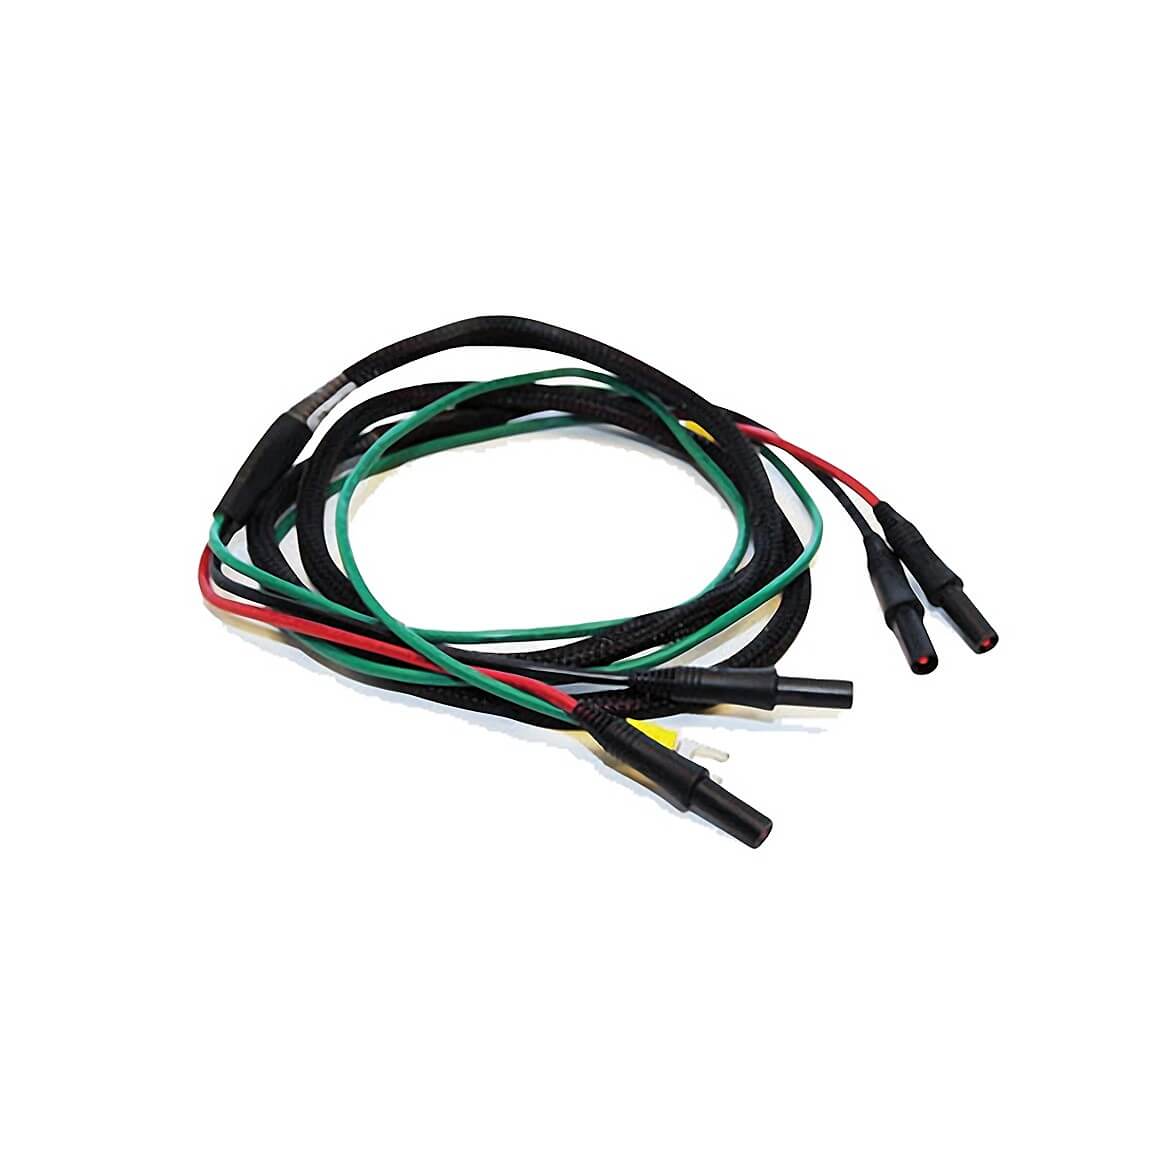 Honda, Honda 06321-ZS9-T30AH Standard Parralel Cables Kit for EU3000